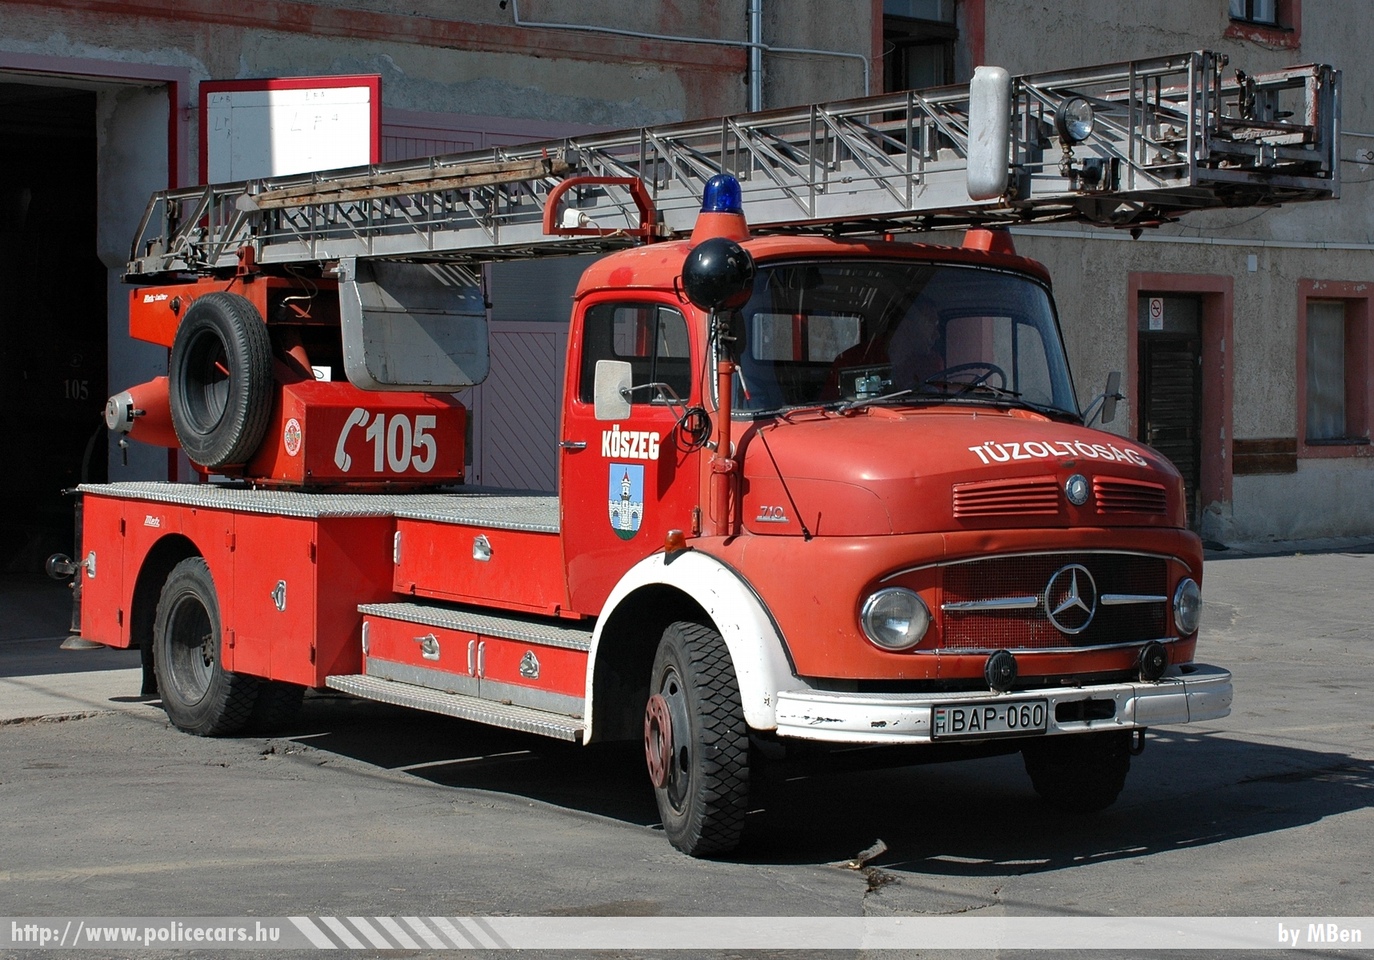 Mercedes-Benz 710 létra, Kõszegi Önkormányzati Tûzoltóparancsnokság, fotó: MBen
Keywords: tûzoltóautó tûzoltó ÖTP tûzoltóság magyar Magyarország fire firetruck Hungary hungarian BAP-060